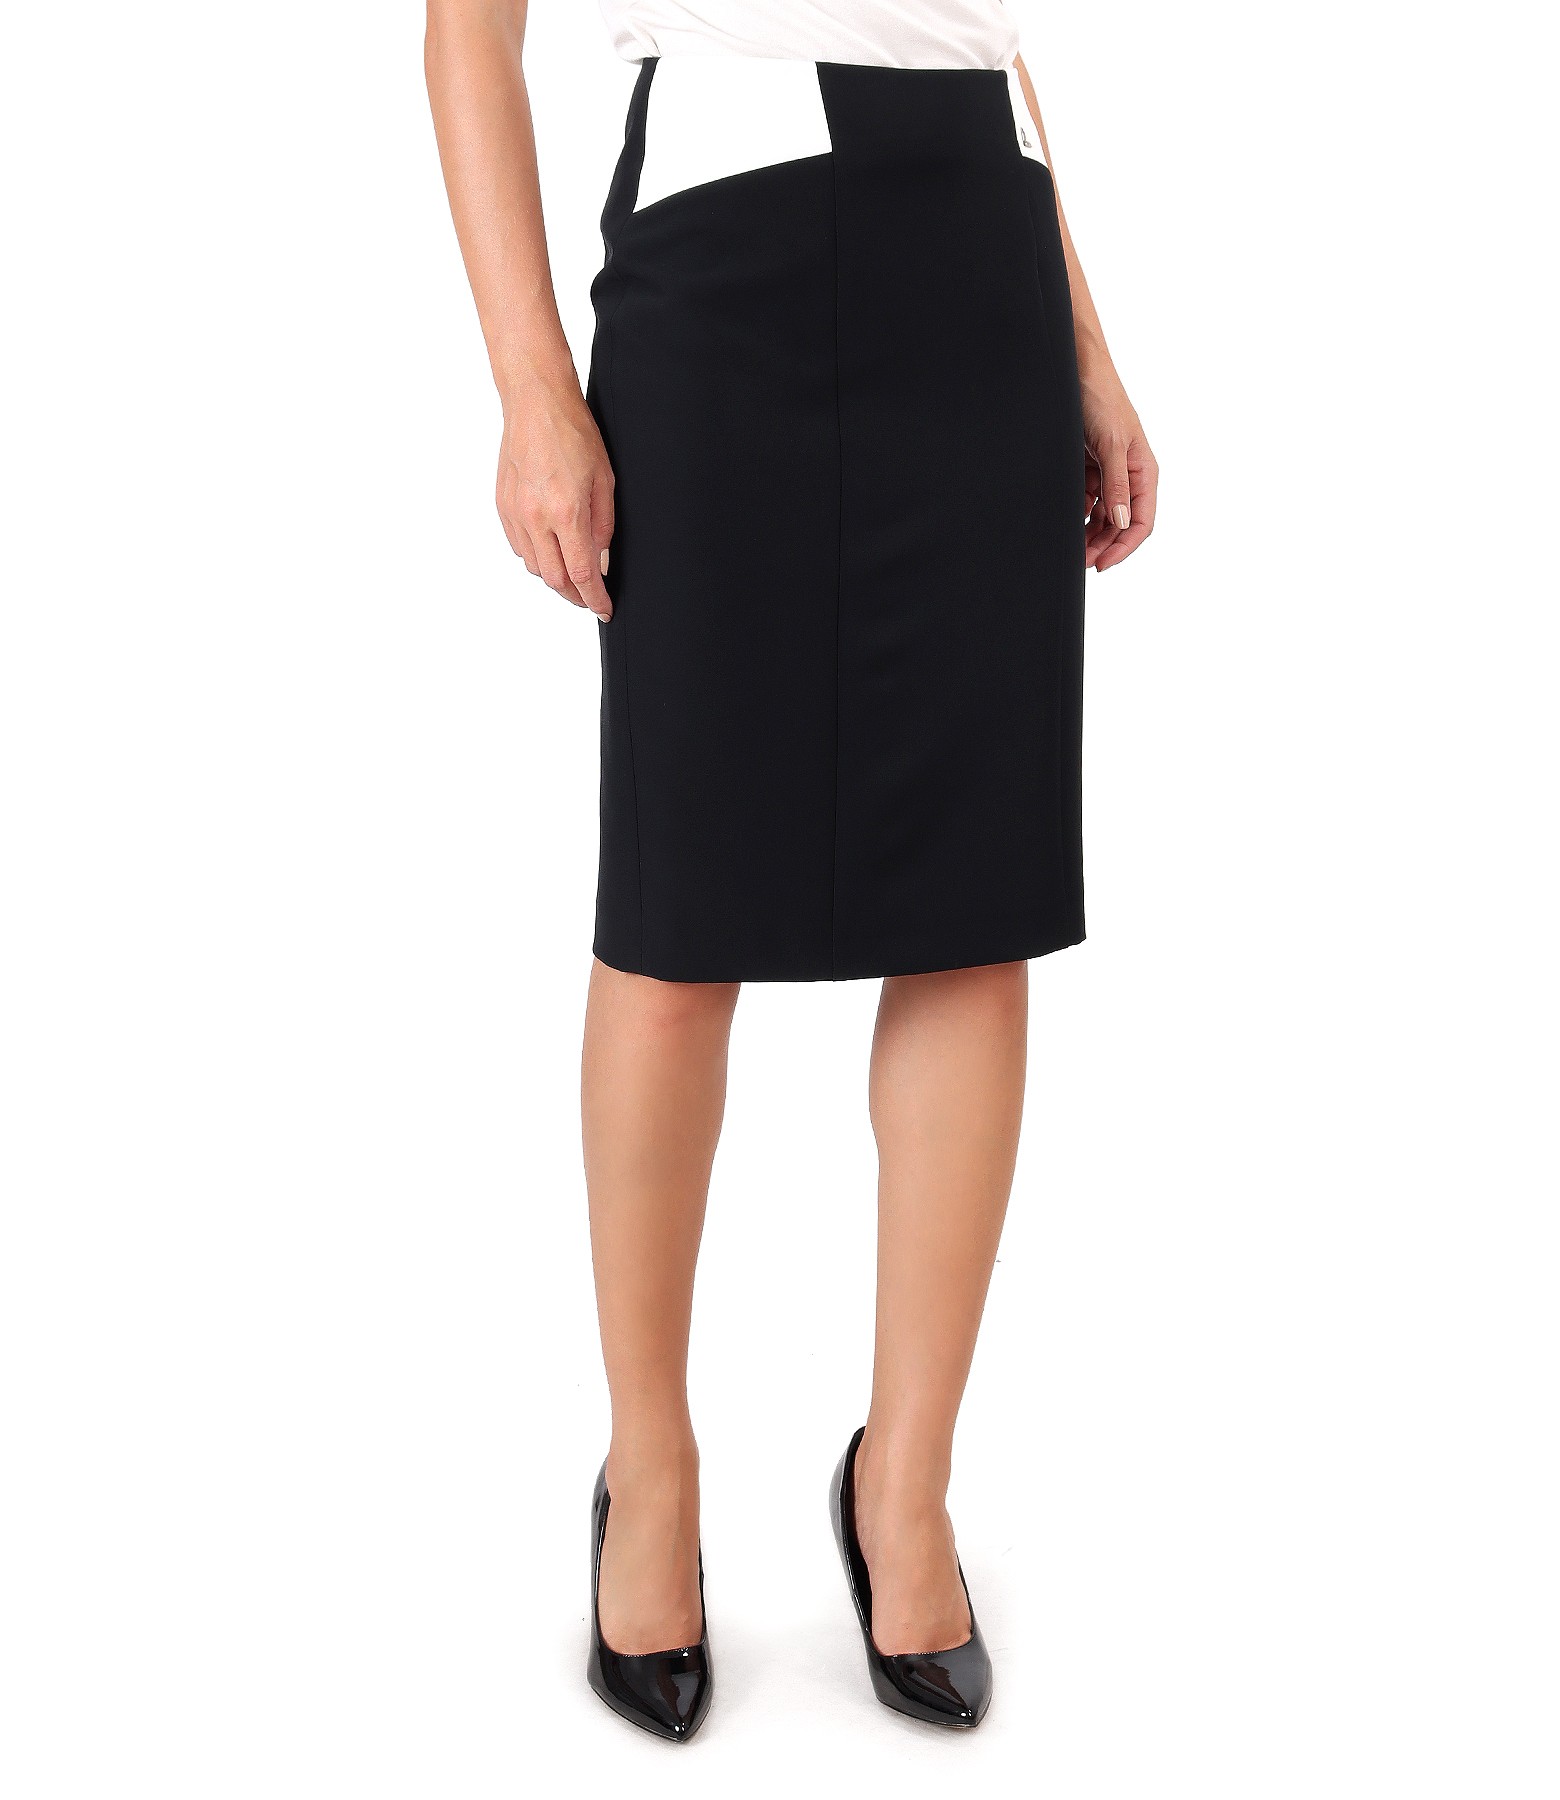 Elastic fabric skirt in two colors black - YOKKO